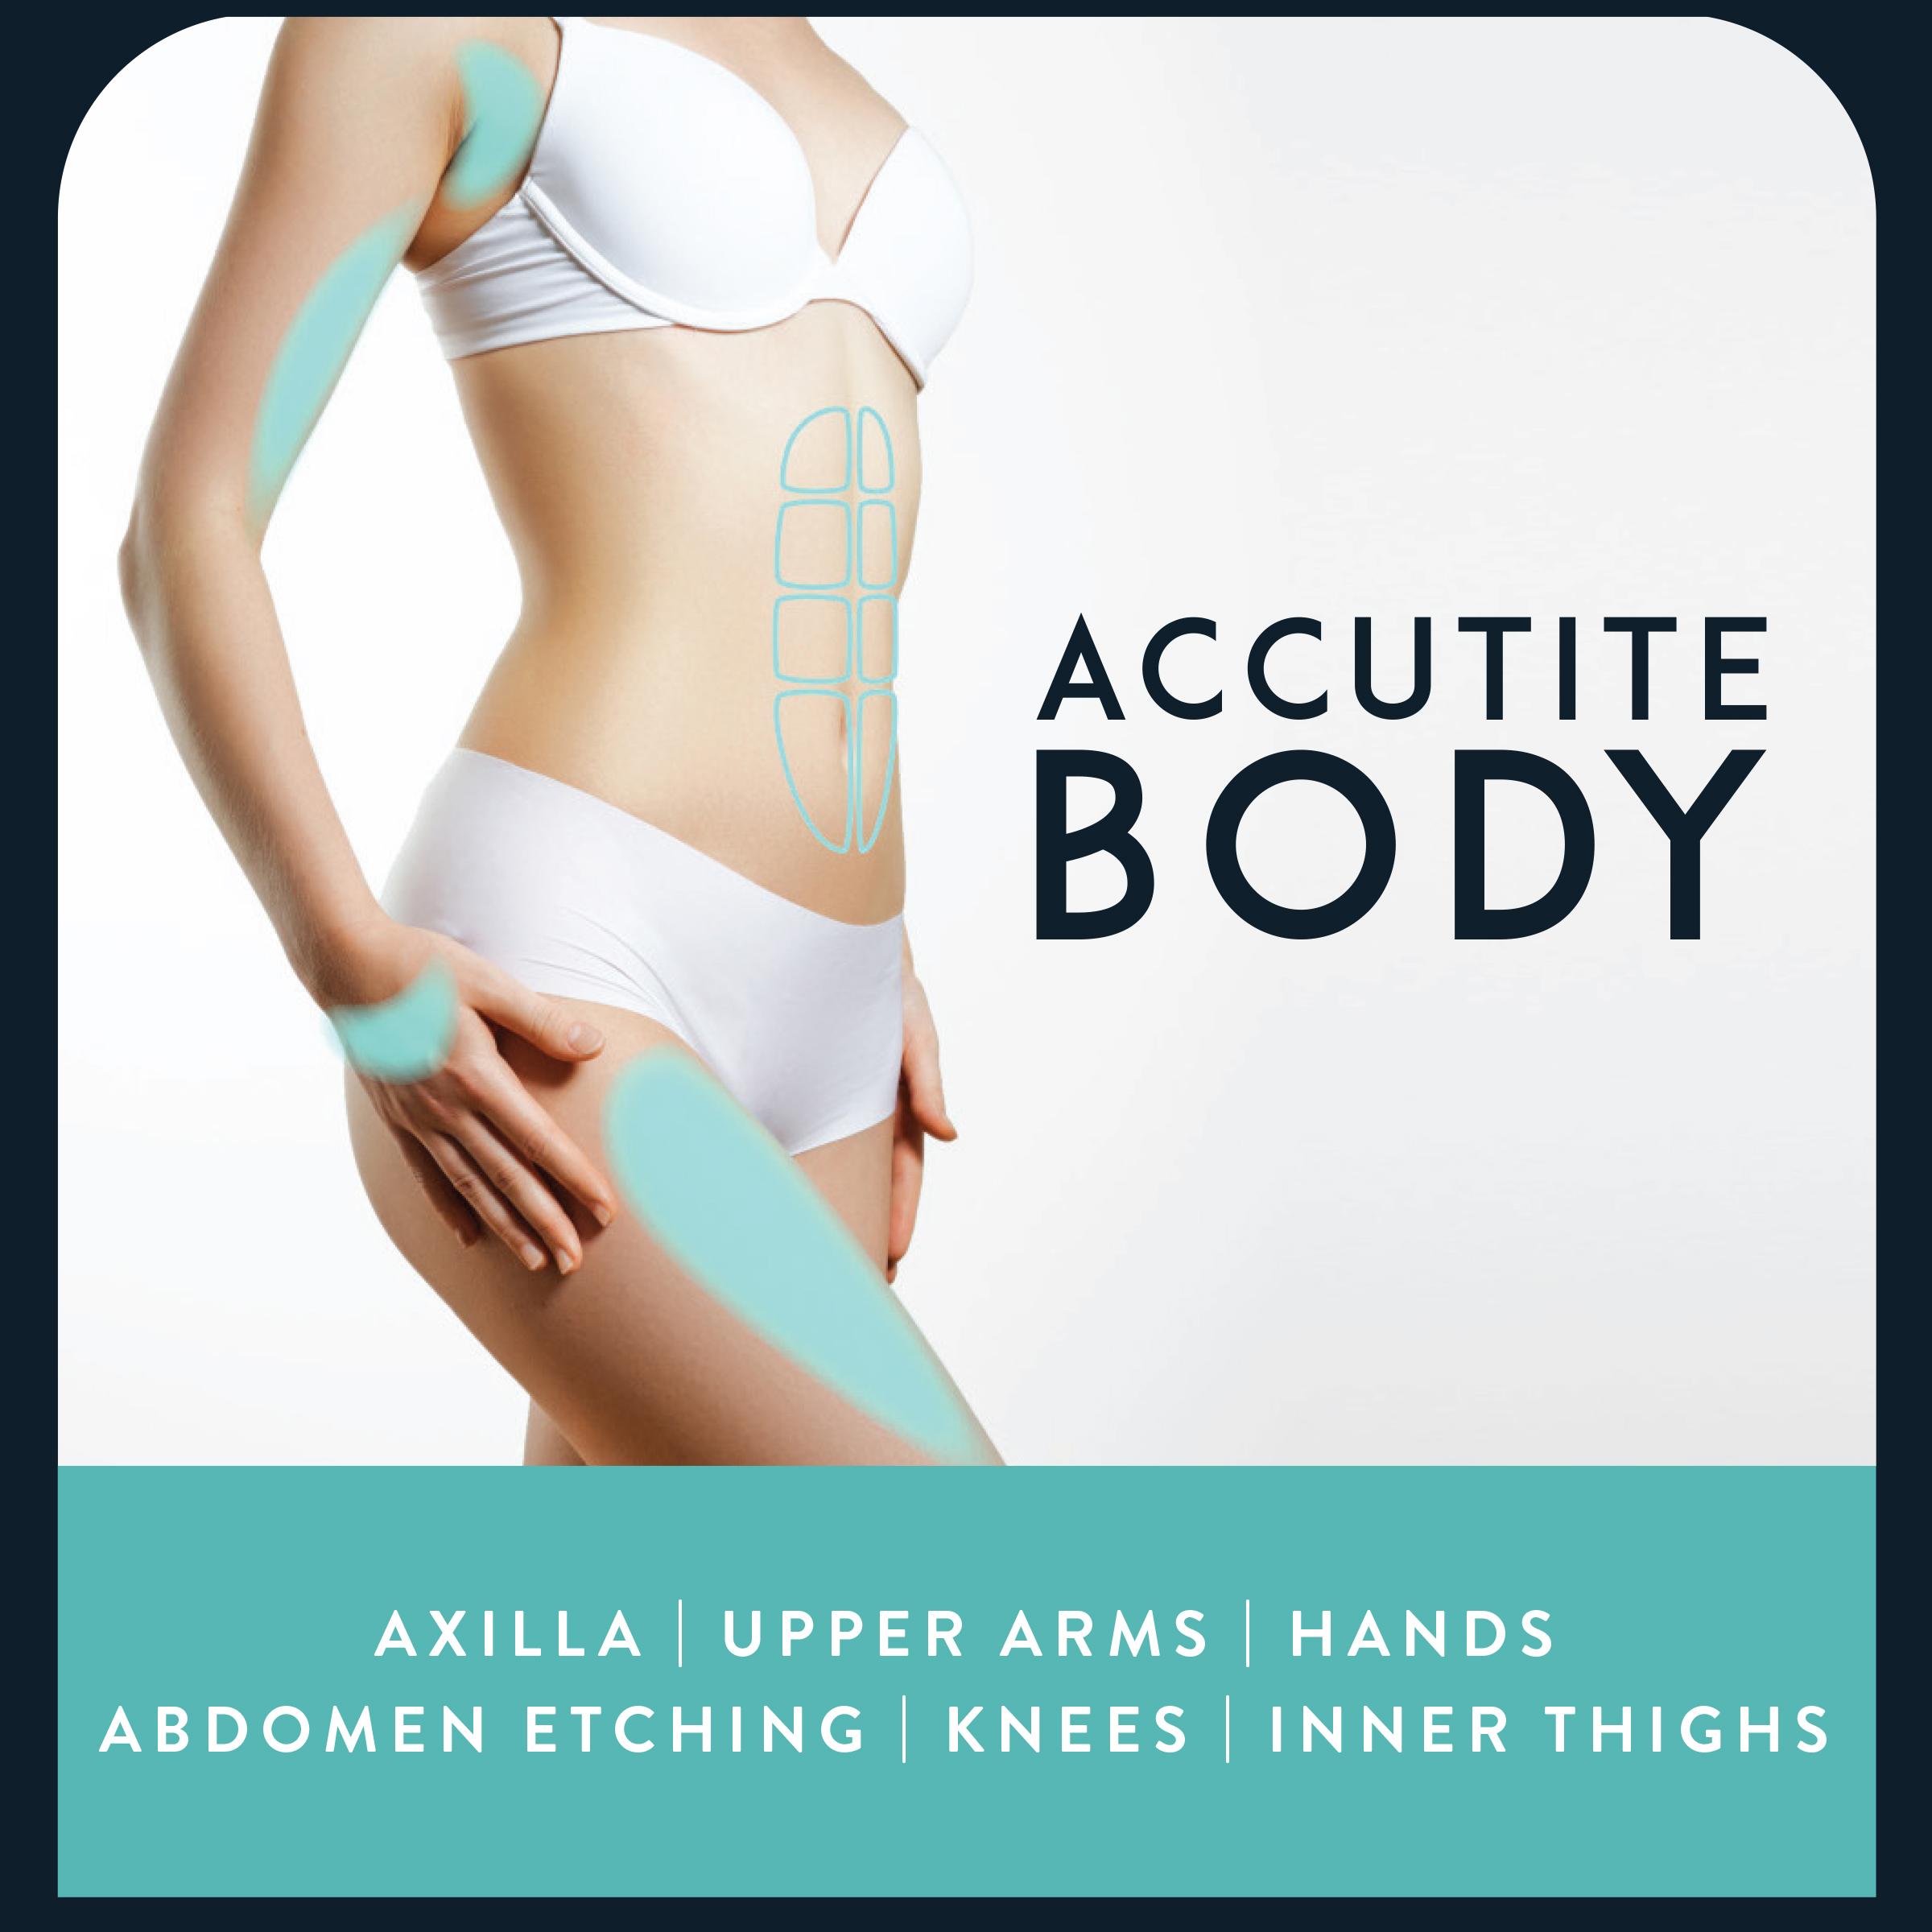 AccuTite Body flyer